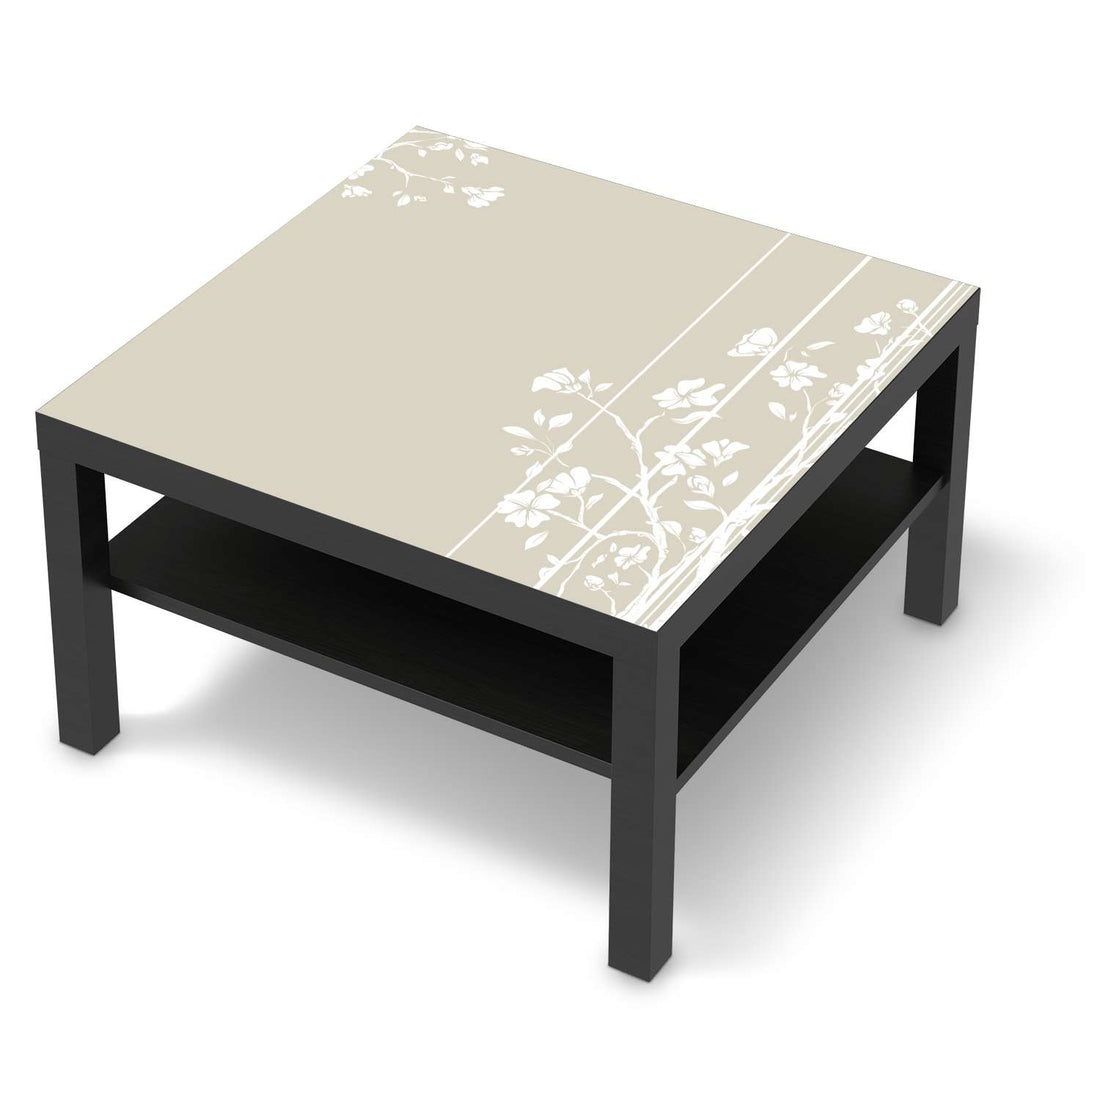 Selbstklebende Folie Florals Plain 3 - IKEA Lack Tisch 78x78 cm - schwarz